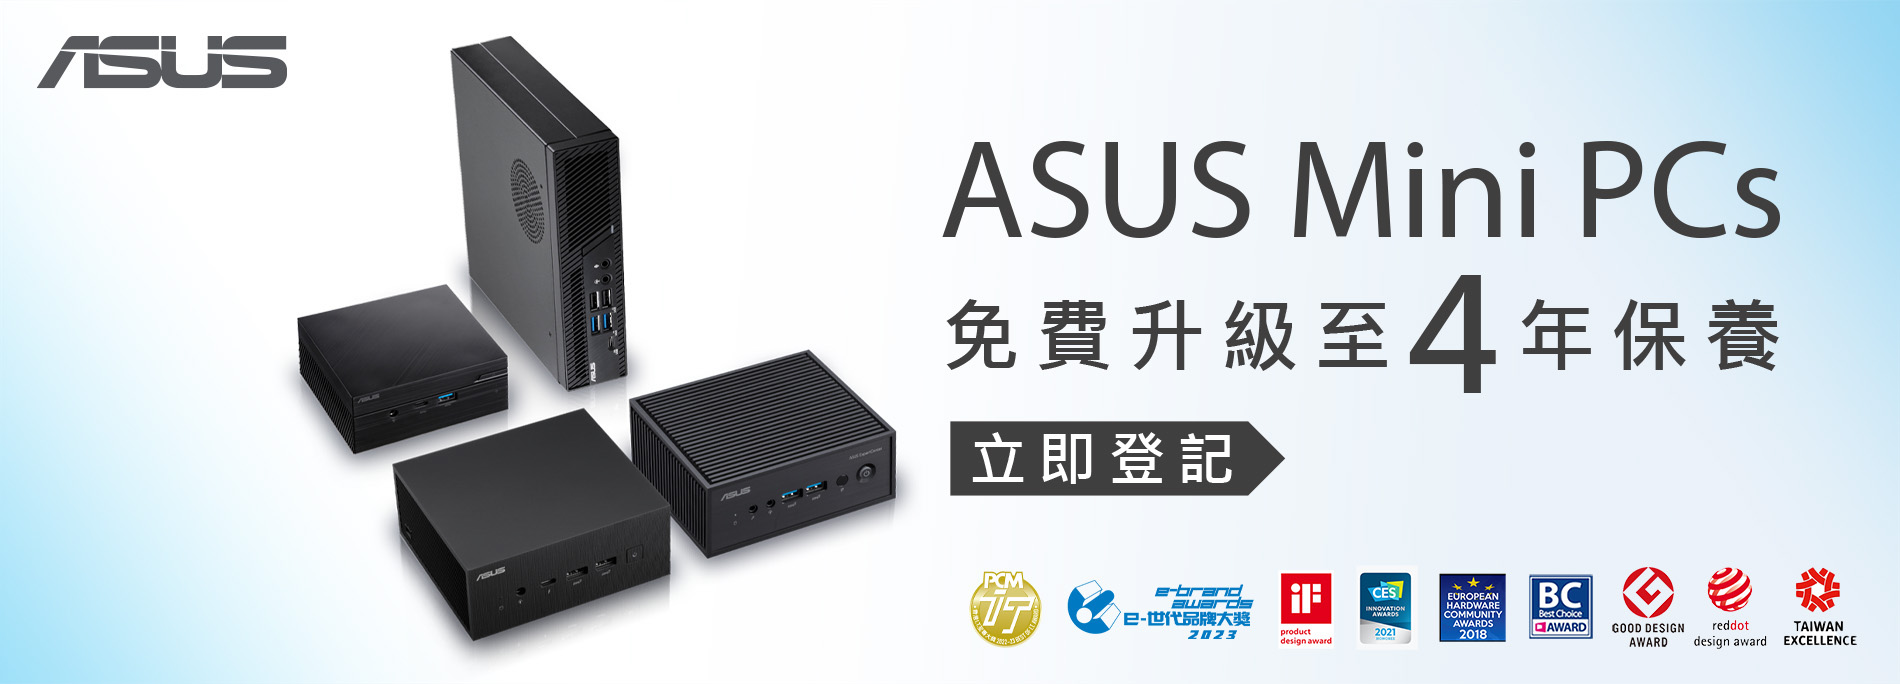 ASUS  Mini PC．立即登記免費升級至4年保養